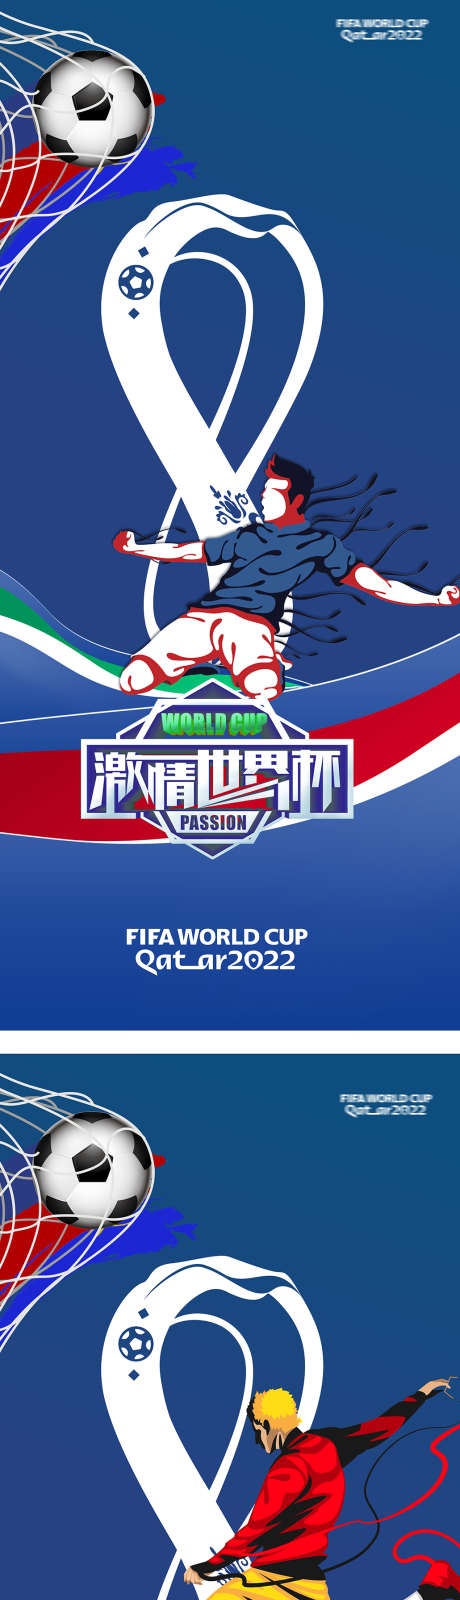 2022卡塔尔世界杯足球赛竞技海报_源文件下载_1030X4693像素-欧冠,竞技,足球赛,世界杯,卡塔尔,2022,海报-作品编号:2023052915144904-志设-zs9.com